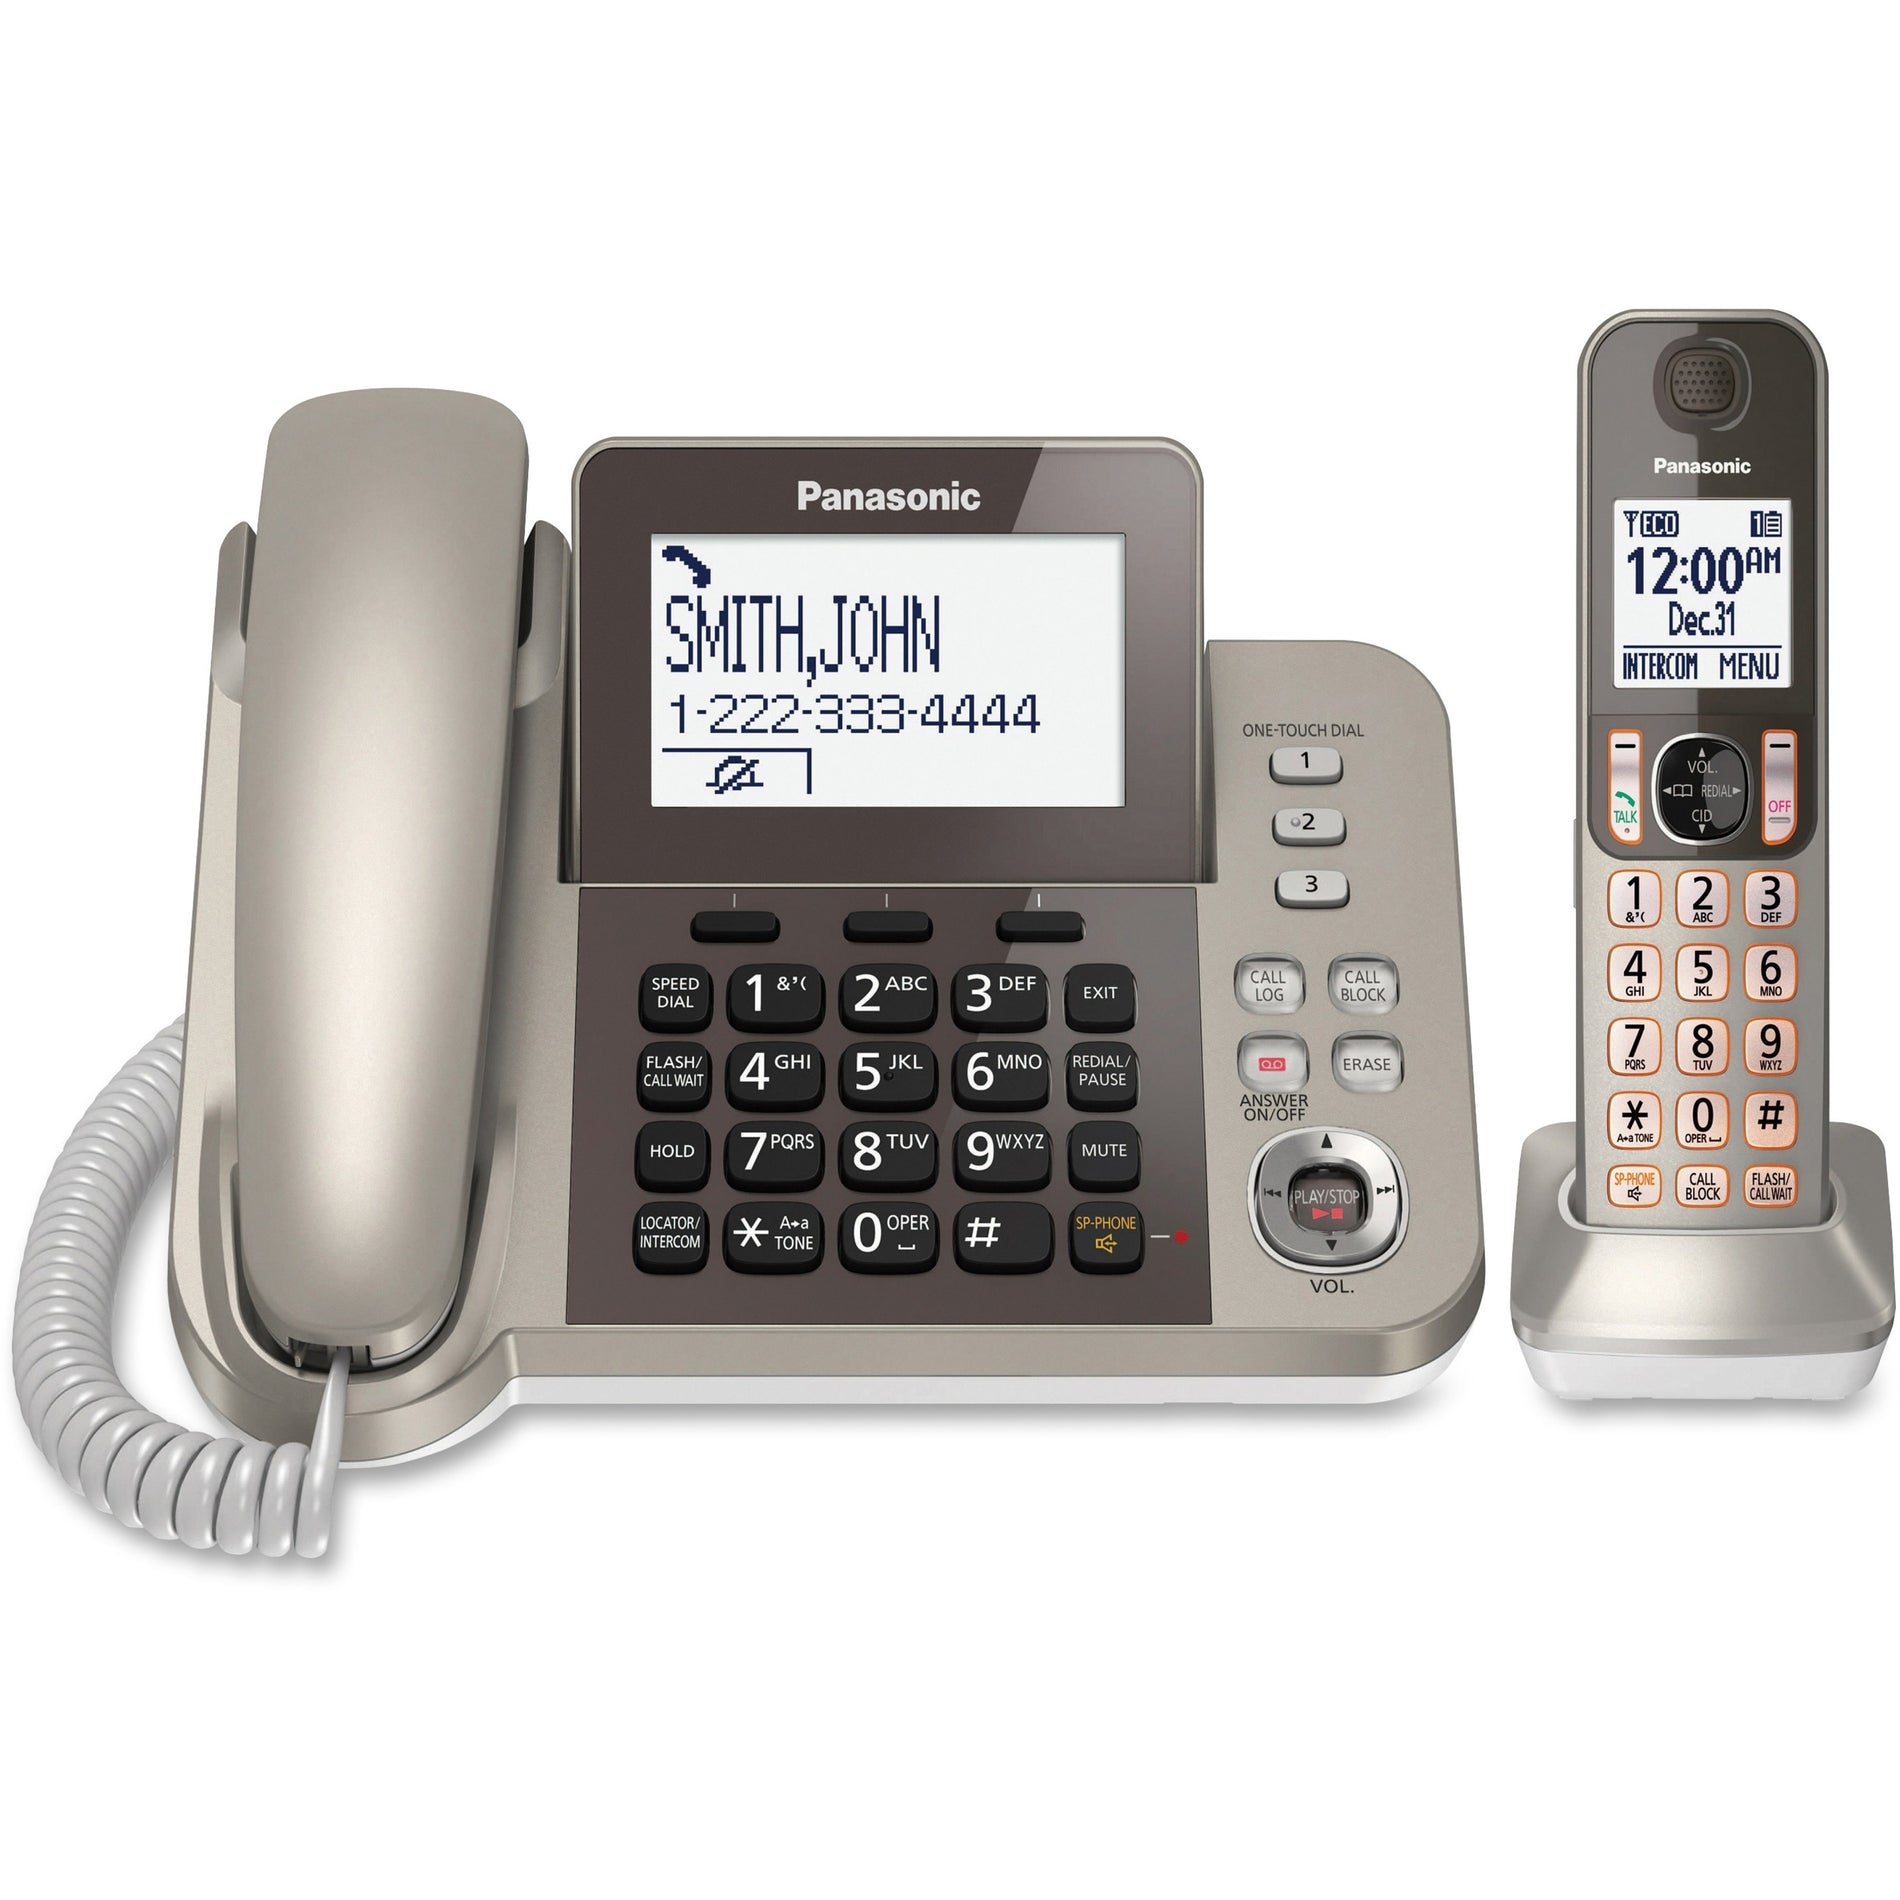 Panasonic KX-TGF350N Corded/cordless Phone/Answering Machine, Nickel - Call Block, Speakerphone, DECT 6.0